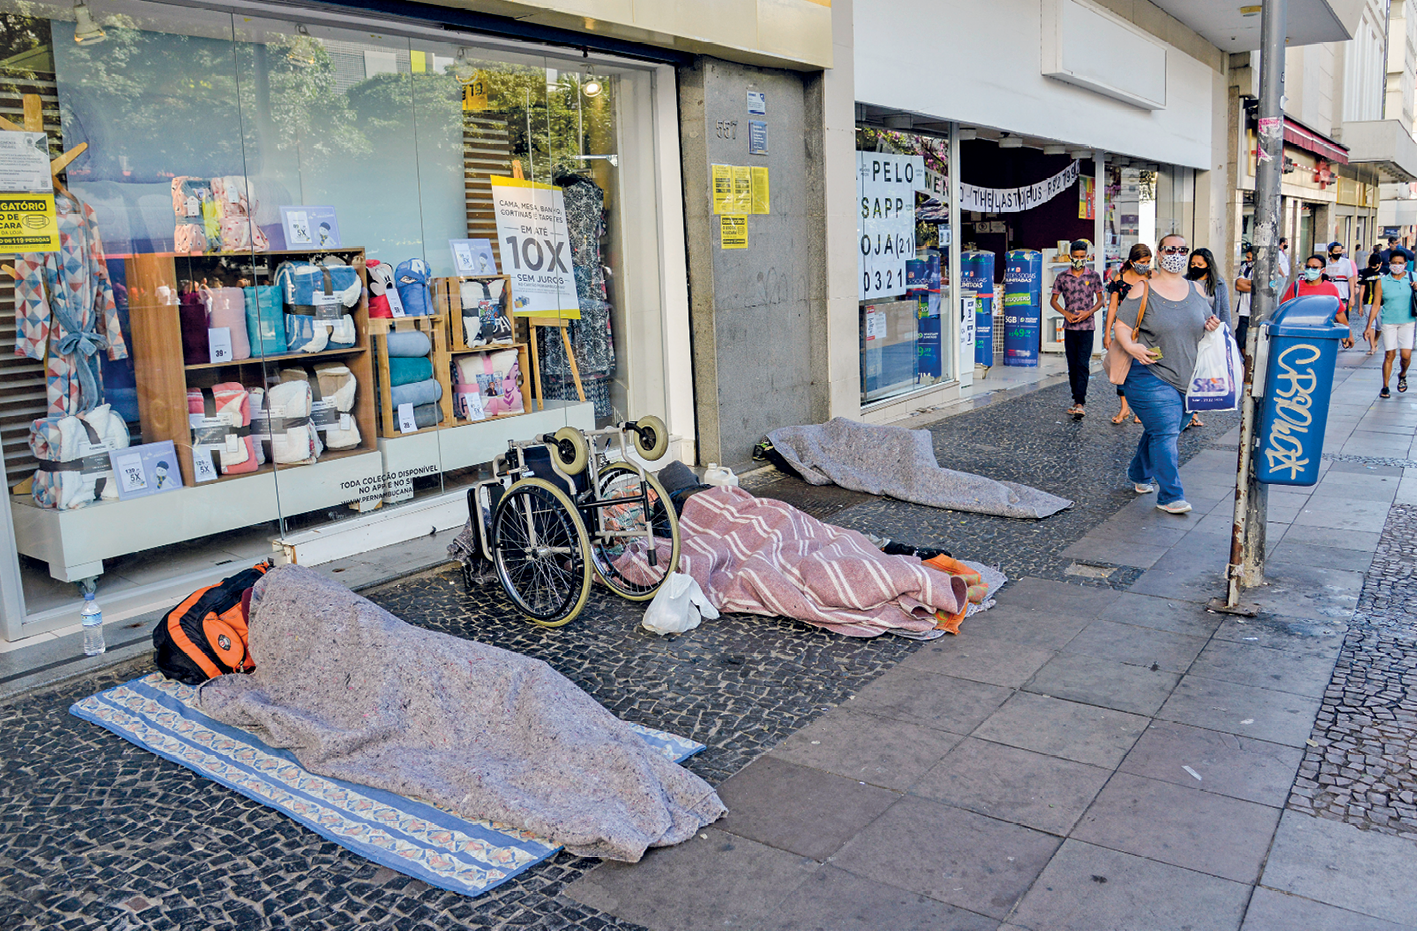 Fotografia. Vista de uma calçada com três pessoas deitadas. Elas estão encobertas por cobertores. Acima de onde elas estão há diversas lojas e, ao fundo, pessoas andando na mesma calçada.